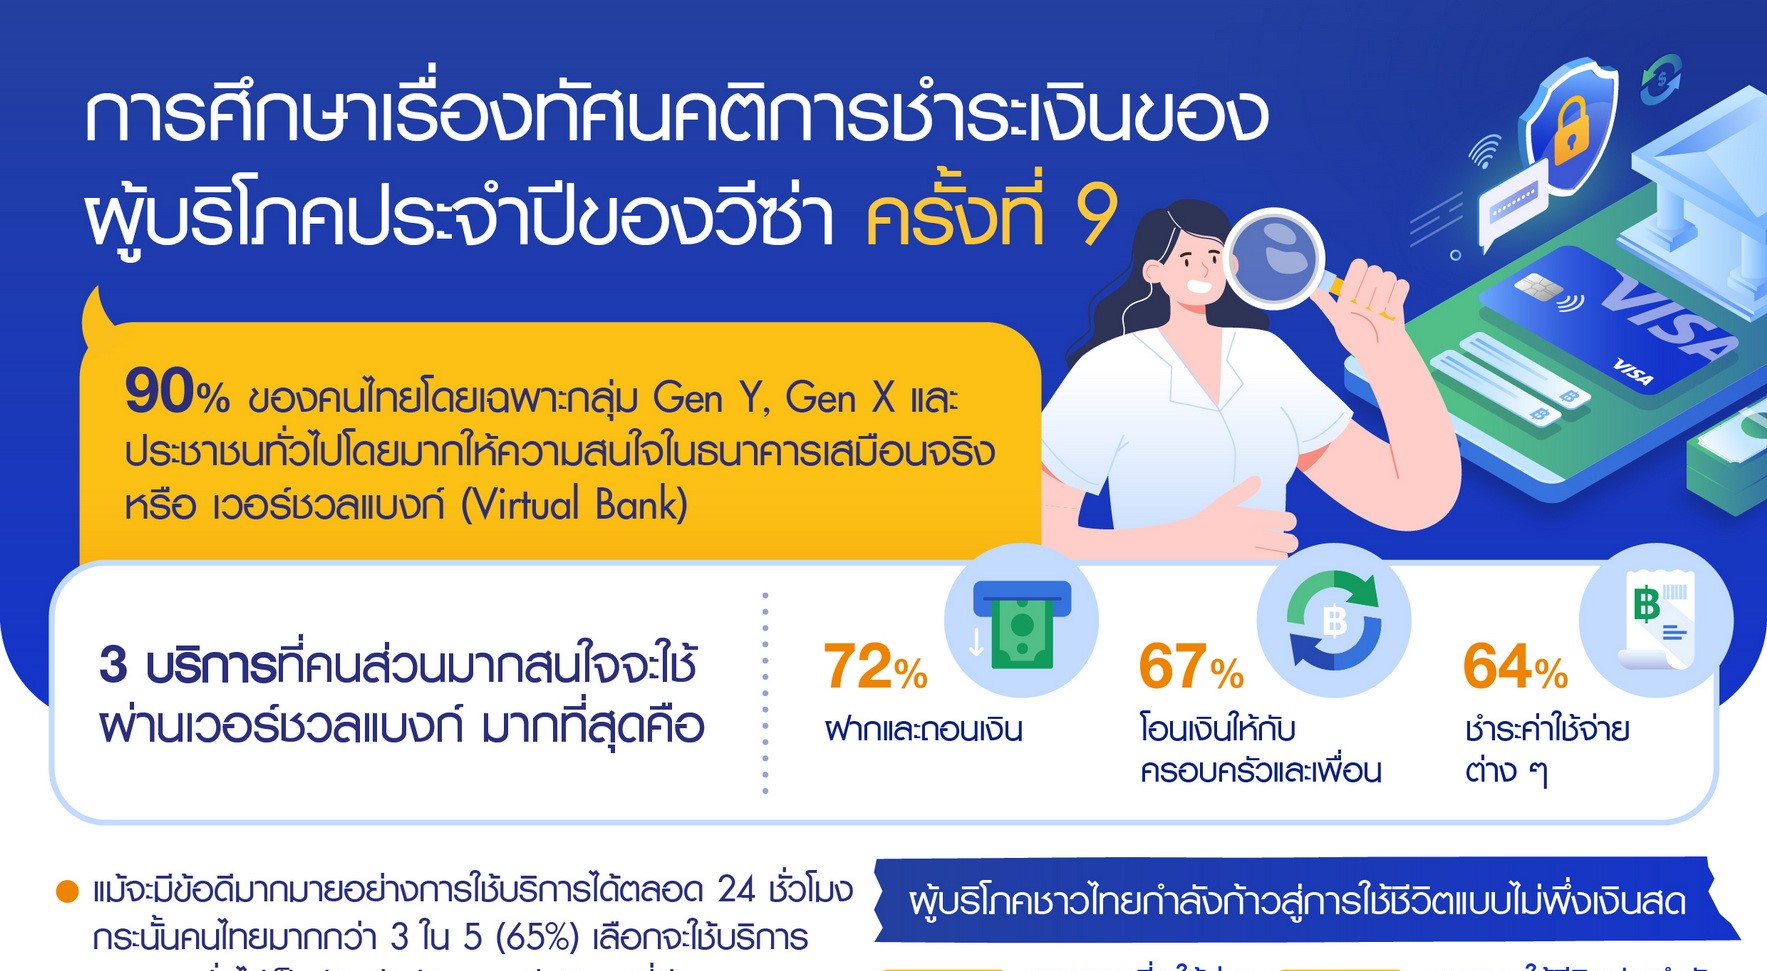 วีซ่า เผยเก้าในสิบของคนไทยสนใจใช้เวอร์ชวลแบงก์